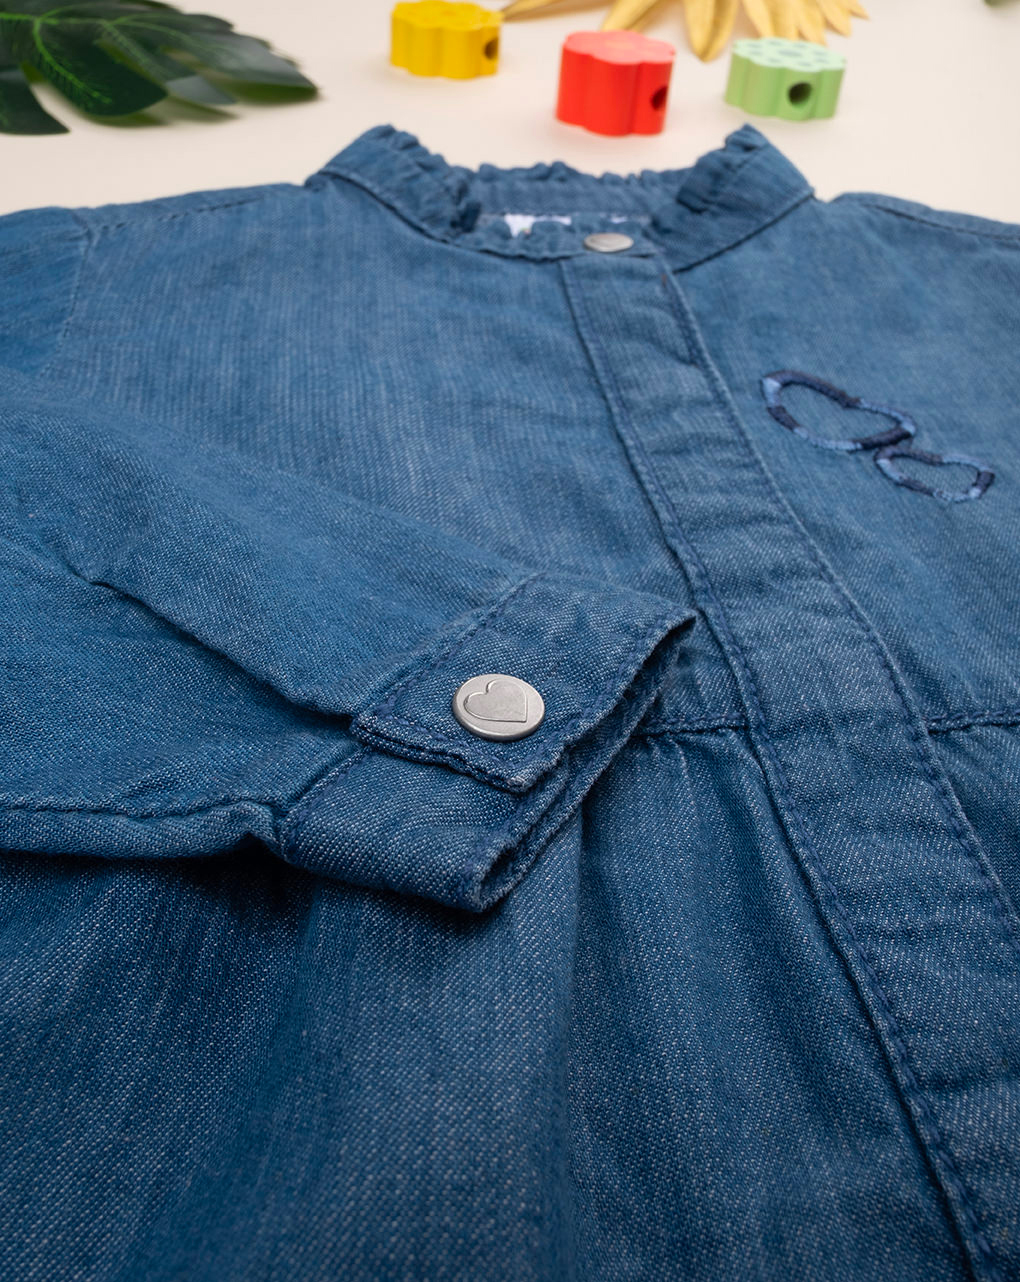 βρεφικό τζιν πουκάμισο μπλε με καρδούλες για κορίτσι - Prénatal